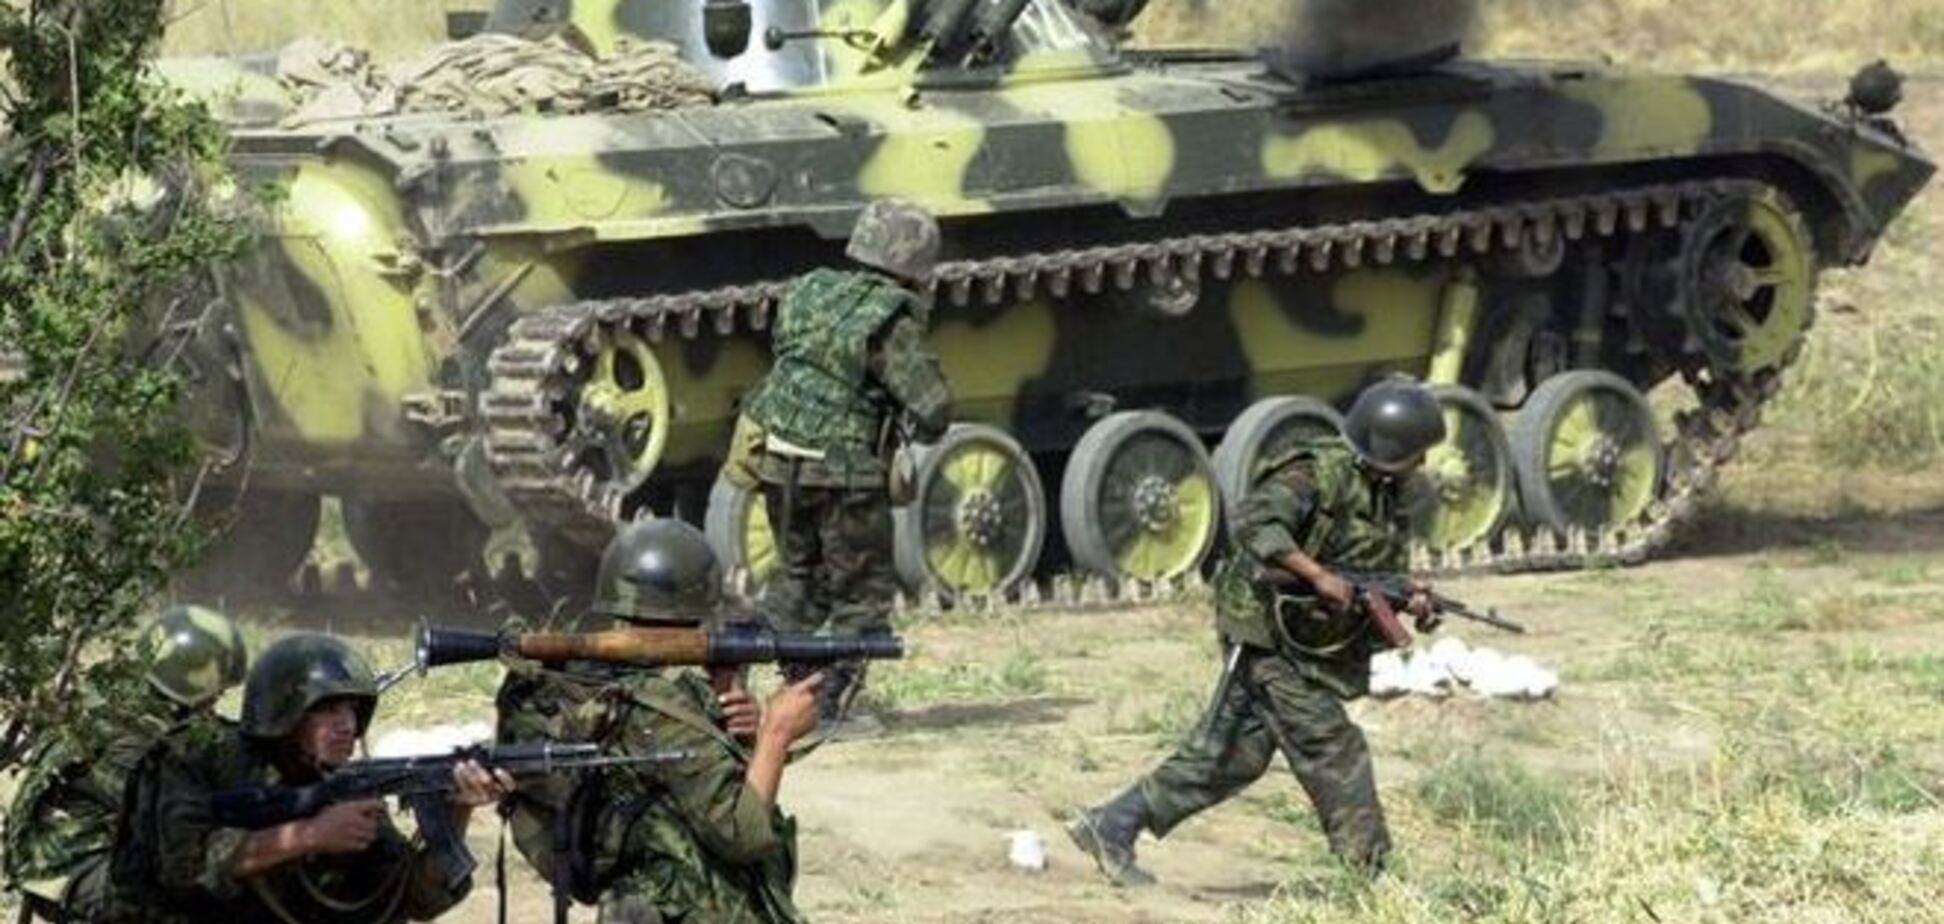 Войска Армении без предупреждения вторглись на территорию Азербайджана - СМИ